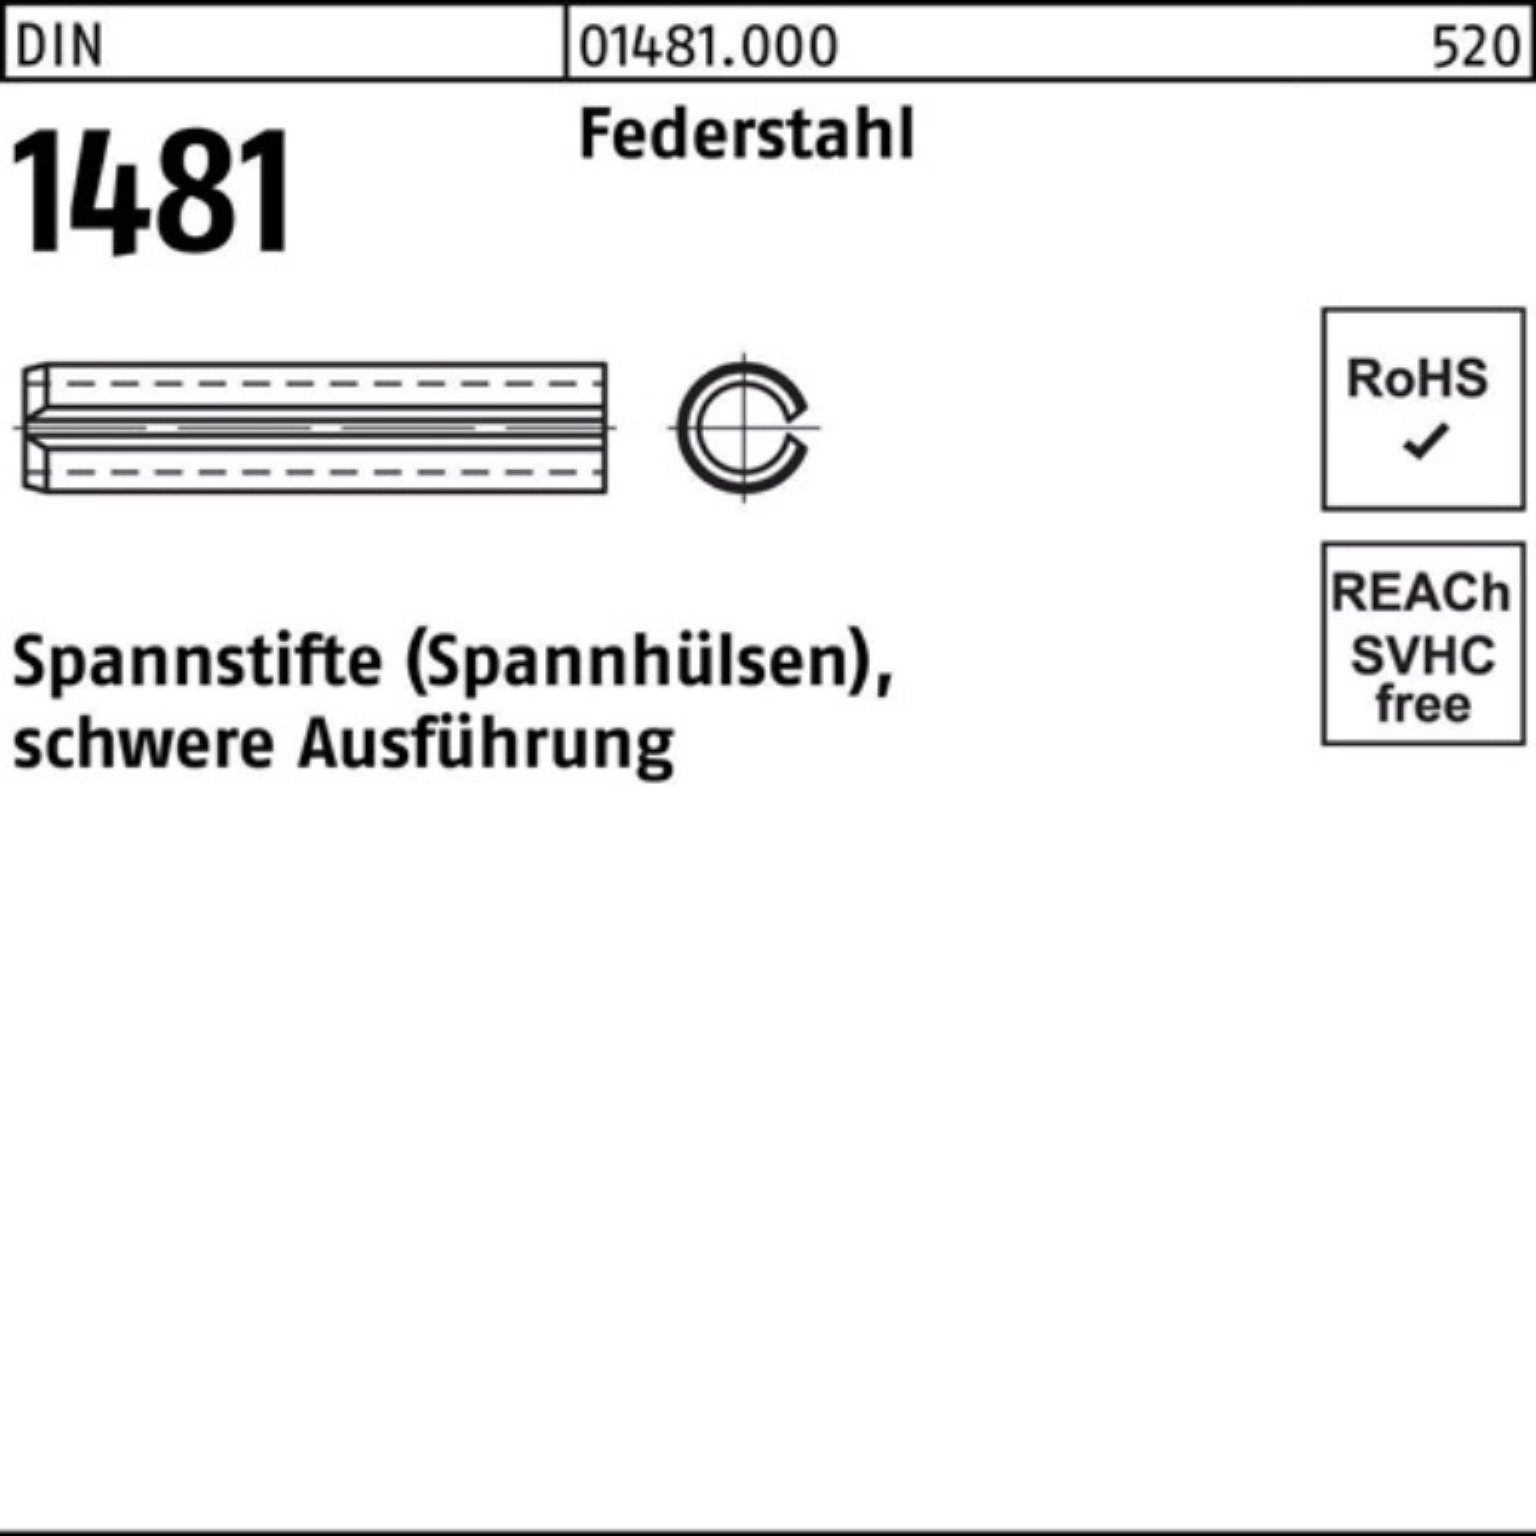 Reyher Spannstift 100er Pack Spannstift DIN 1481 14x 85 Federstahl schwere Ausführung 2